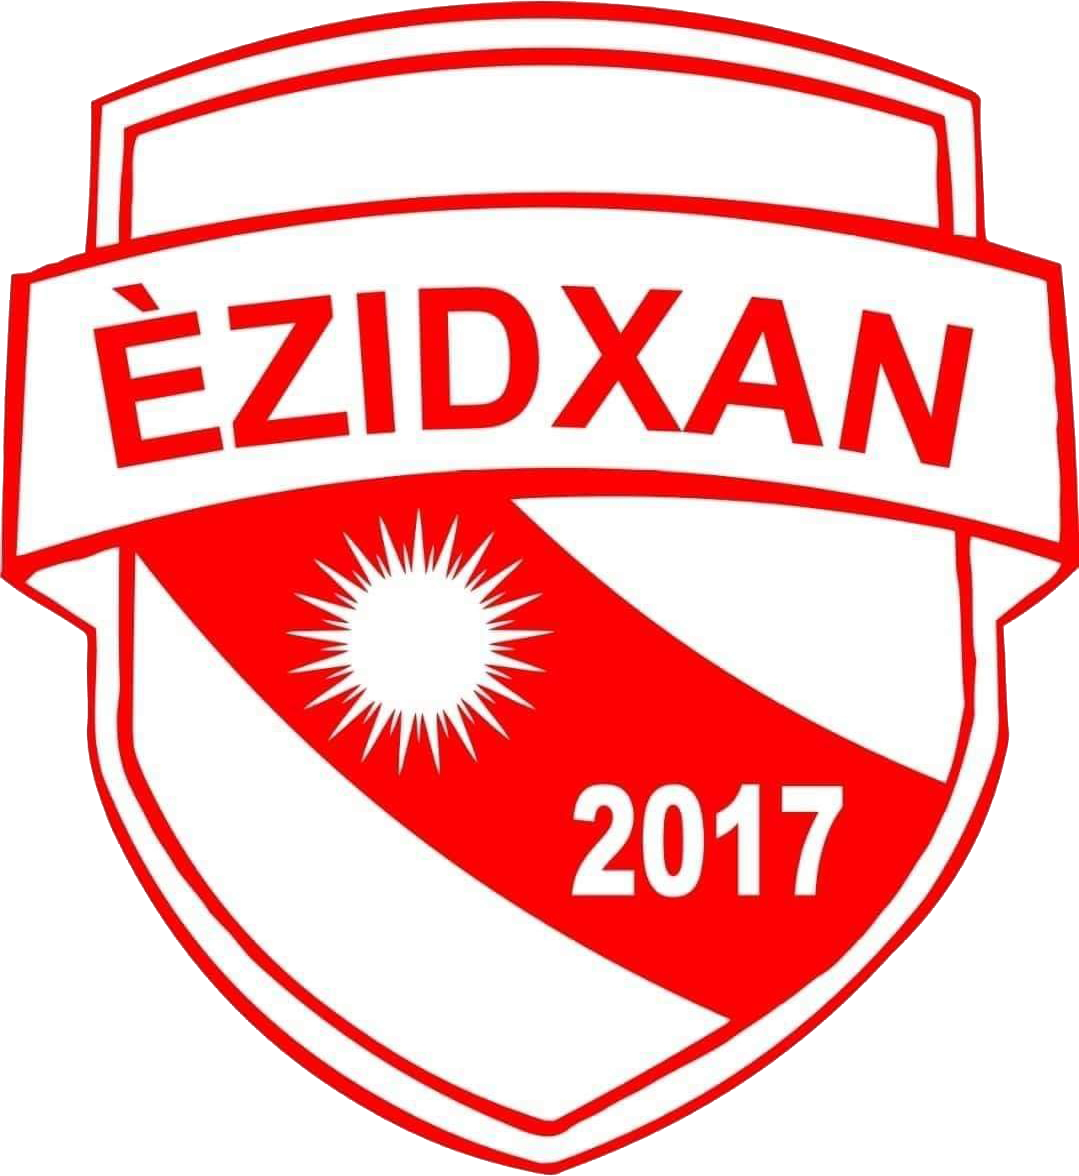 Wappen FC Ezidxan Wilhelmshaven 2017  60574